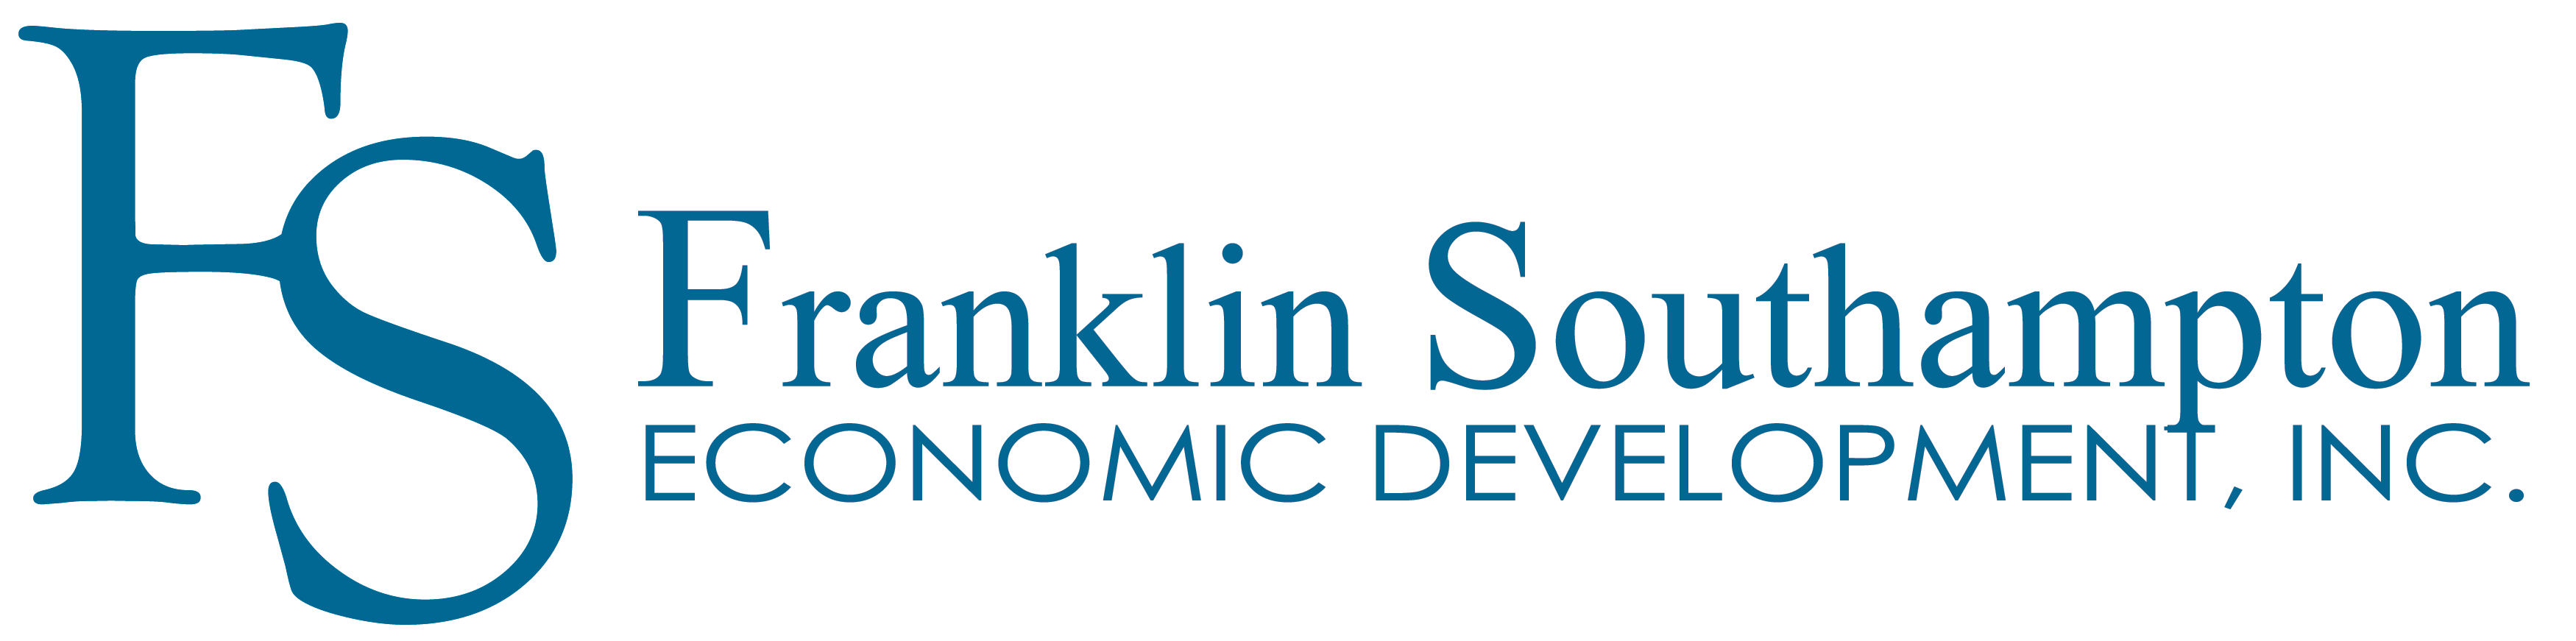 Franklin Southampton Economic Development, Inc. logo